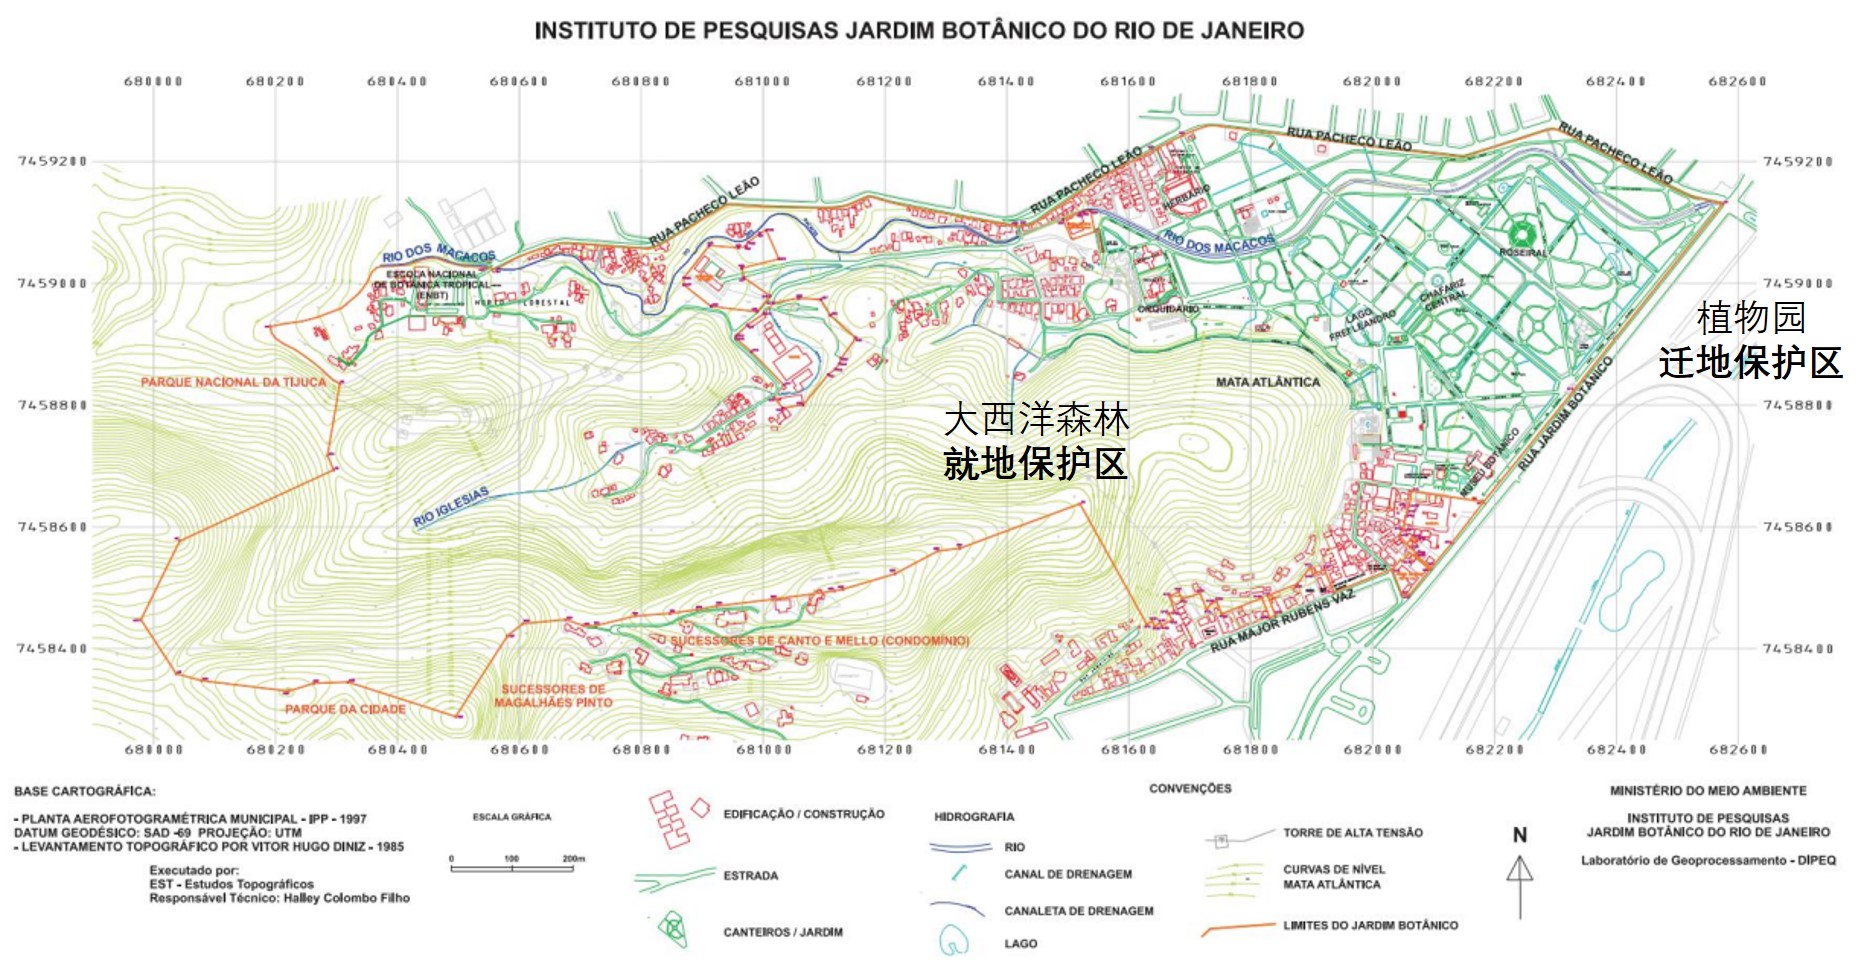 里约热内卢植物园就地保护和迁地保护区域图 02.jpg